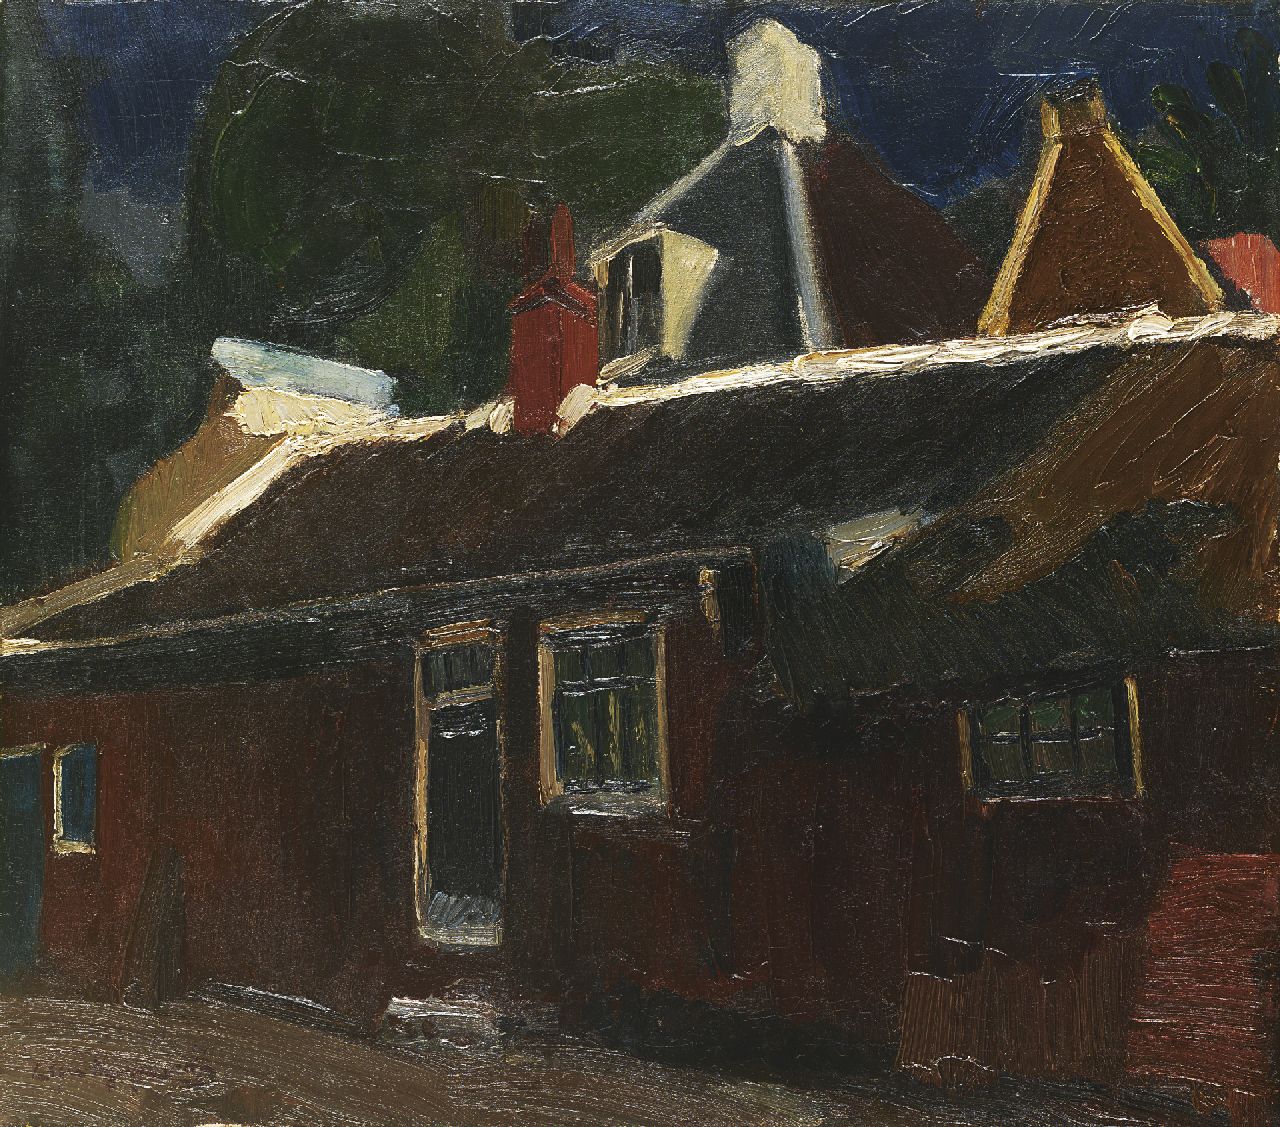 Wijngaerdt P.T. van | Petrus Theodorus 'Piet' van Wijngaerdt | Schilderijen te koop aangeboden | Huizen en rode schuur, olieverf op doek 51,5 x 58,2 cm, gesigneerd linksonder en te dateren ca. 1915